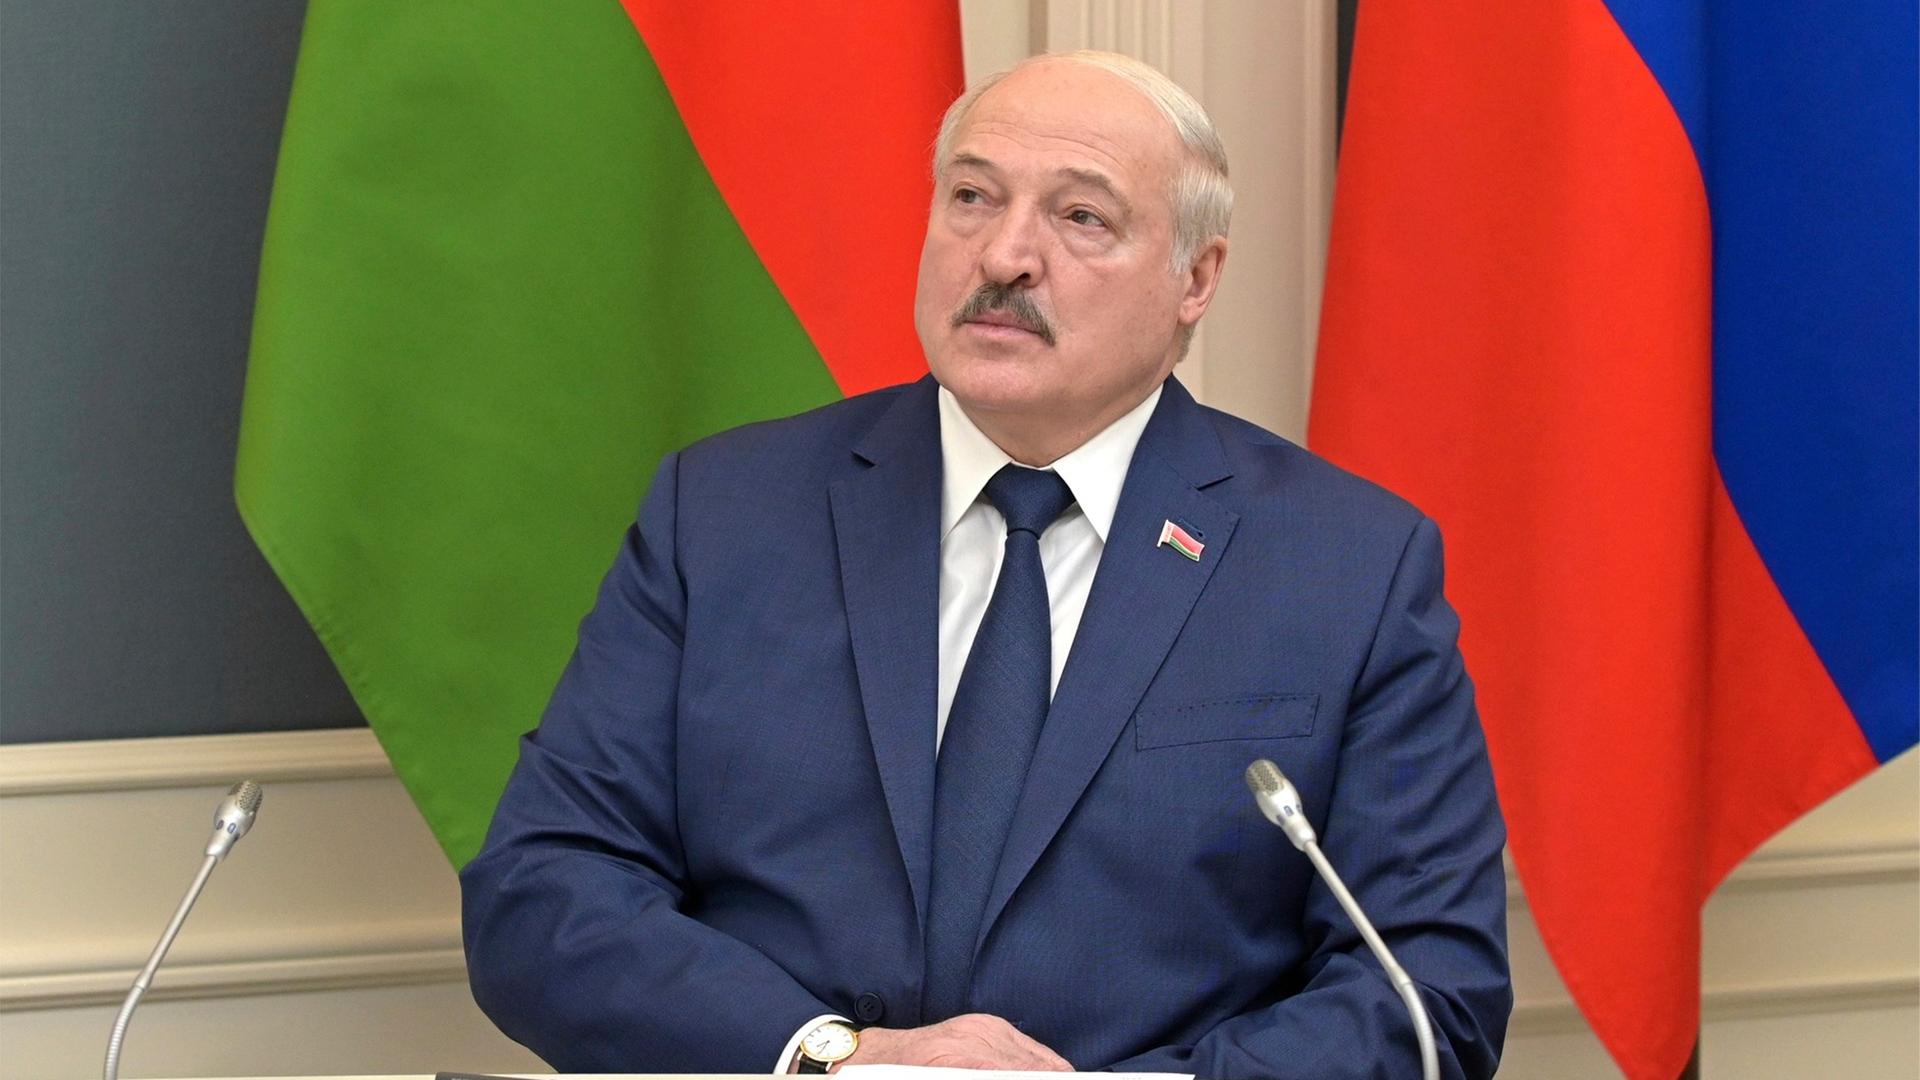 Der Präsident von Belarus am 19. Februar 2022, bei einem Zusammentreffen mit Russlands Präsident Putin